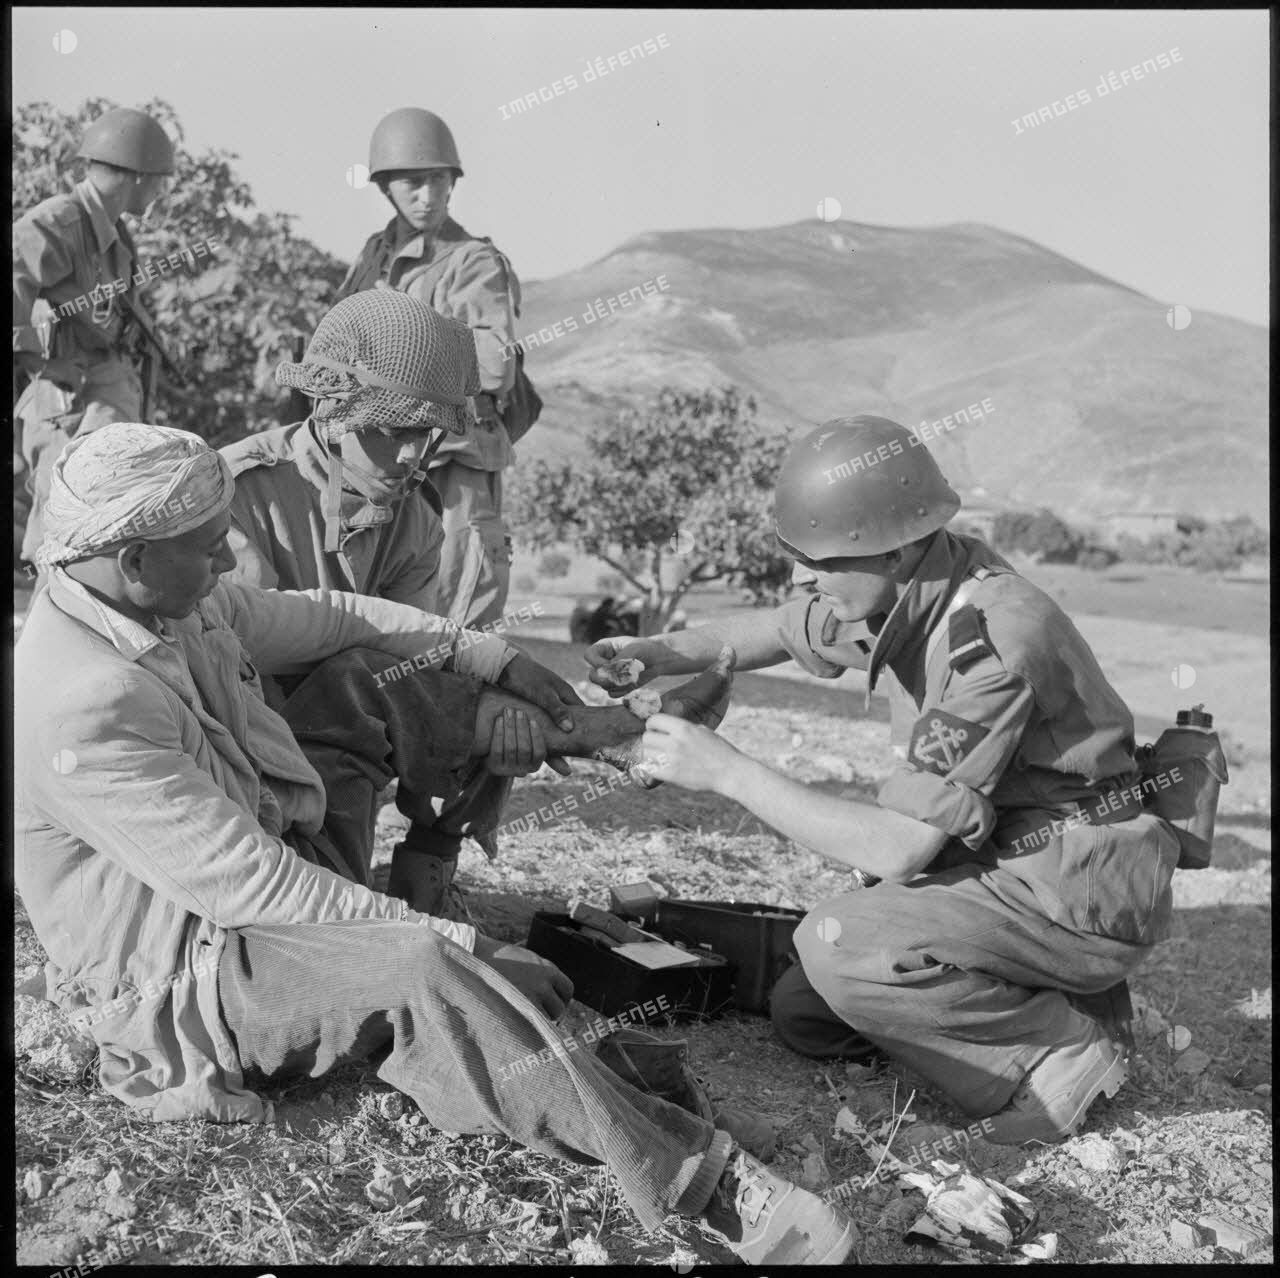 Un aspirant infirmier du 2e bataillon de la 1re demi-brigade de fusiliers-marins (DBFM) soignant un habitant blessé.